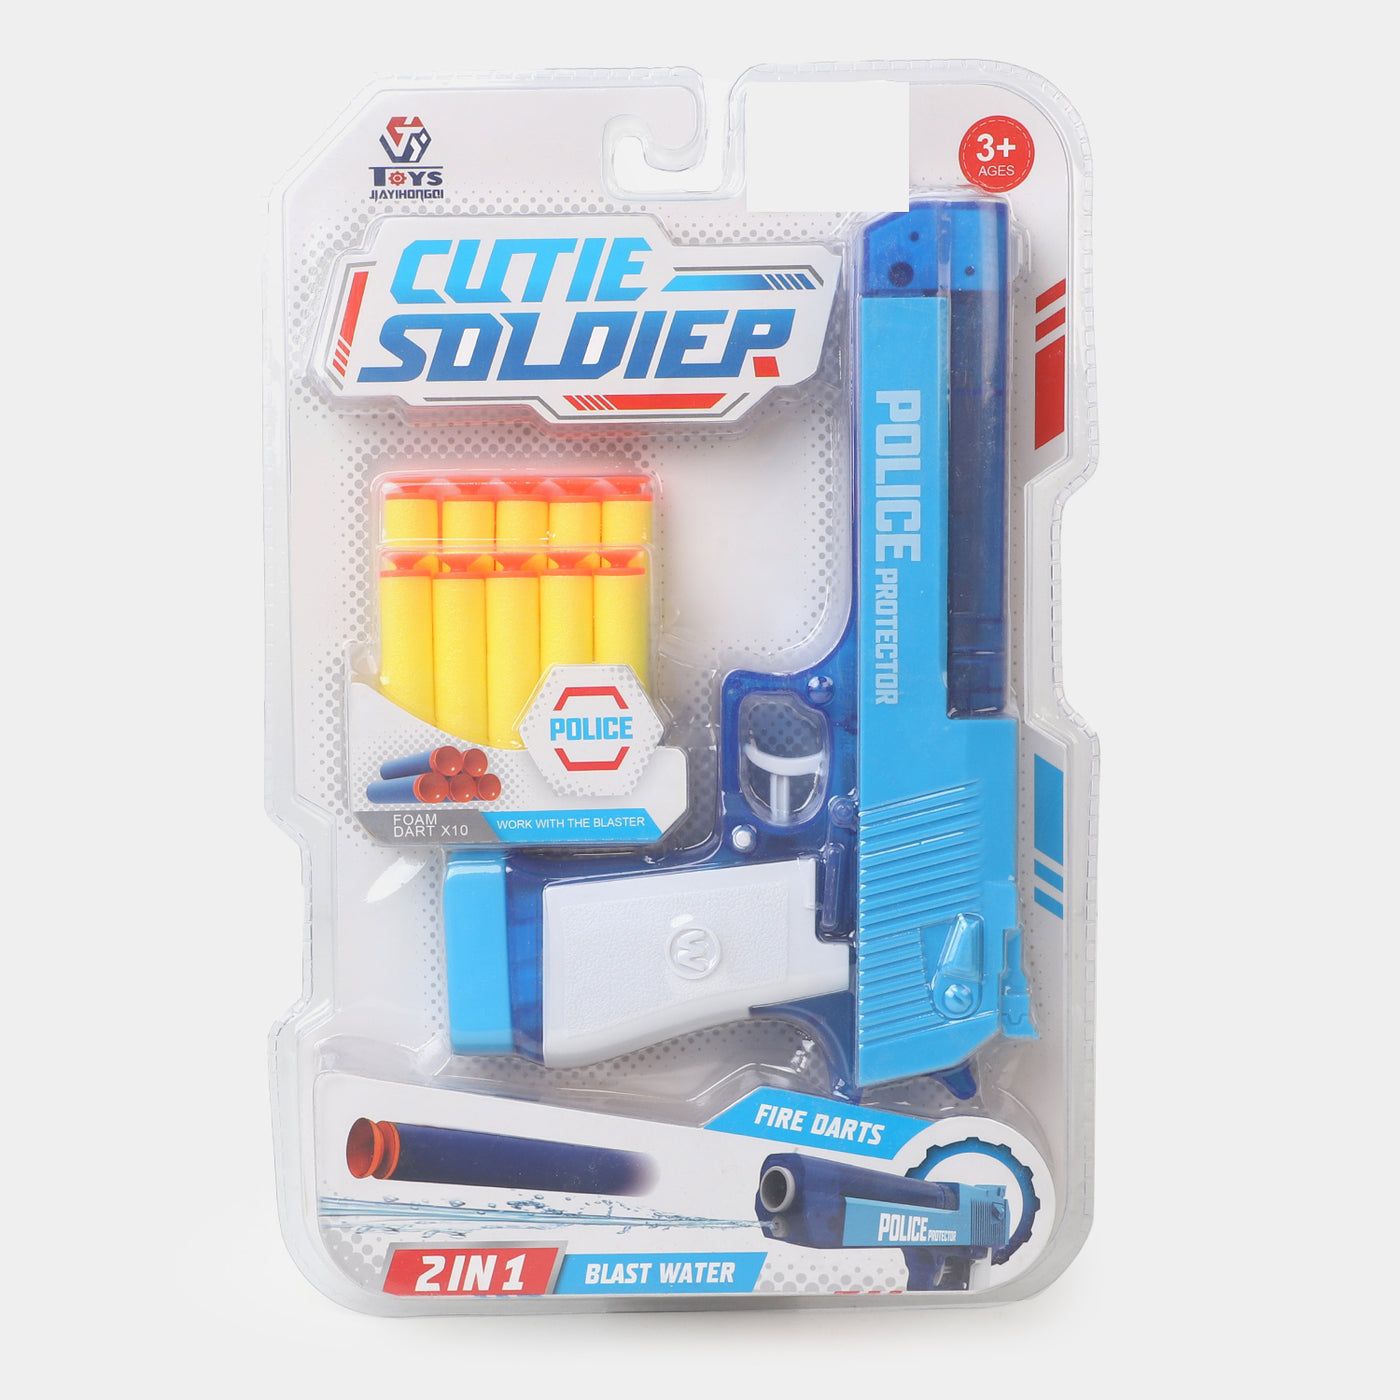 Cutie Soldier Soft Blaster For kids